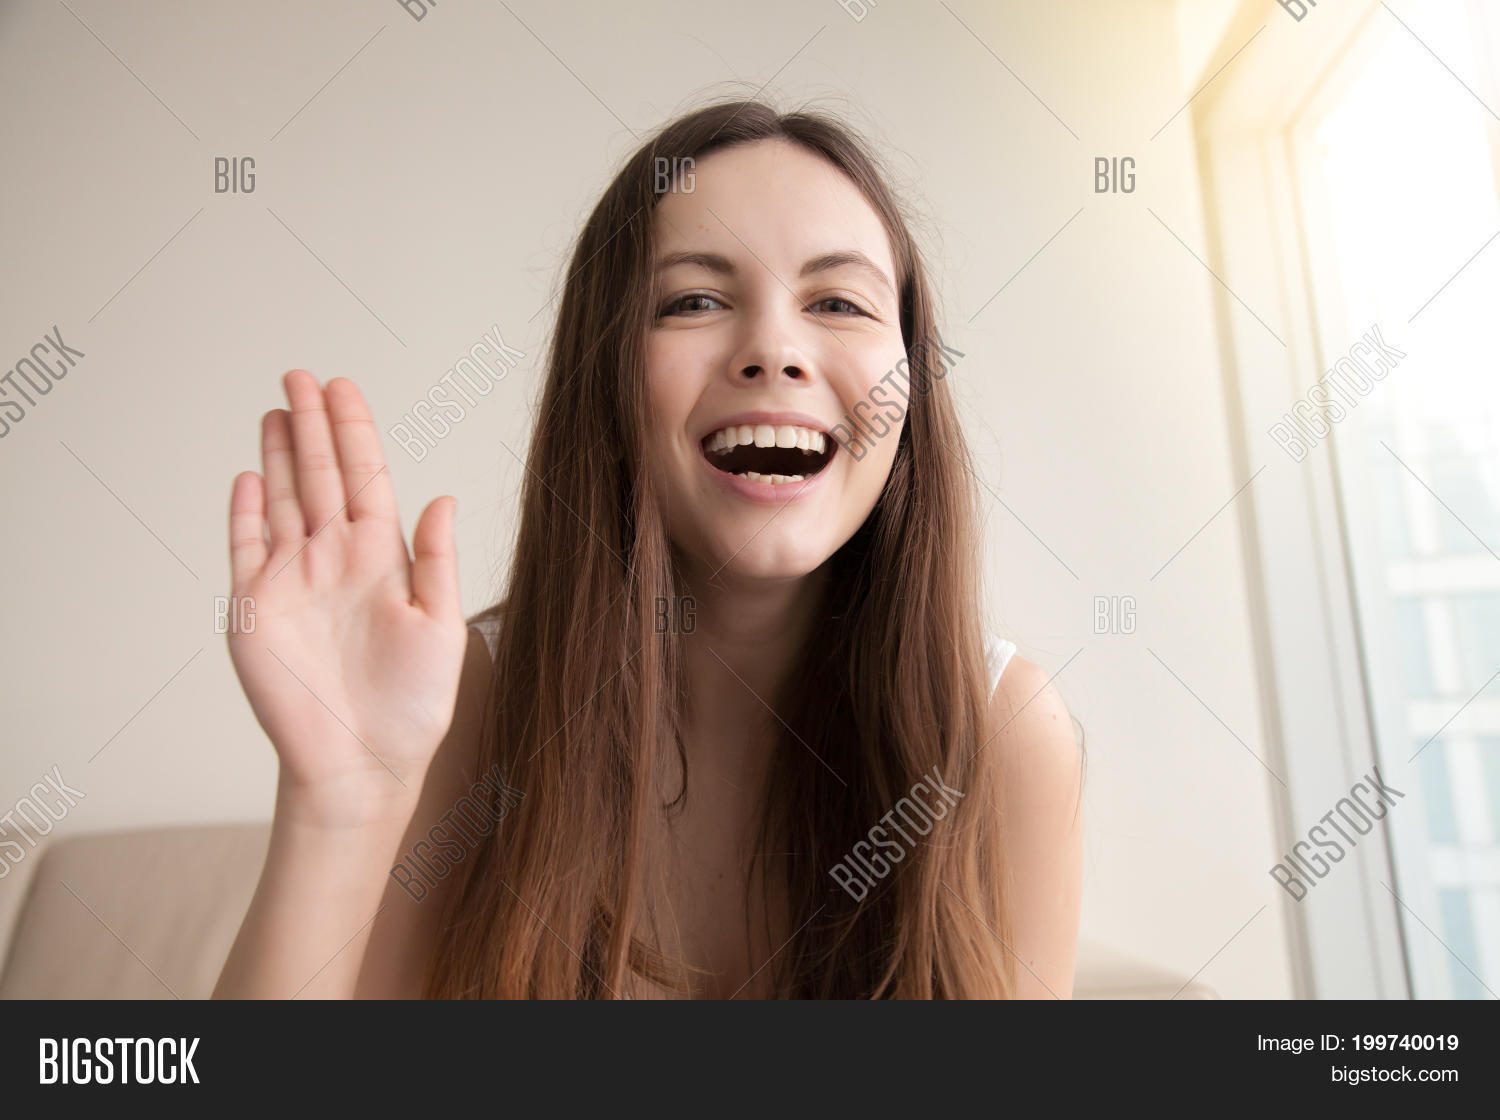 Teen girl with webcam